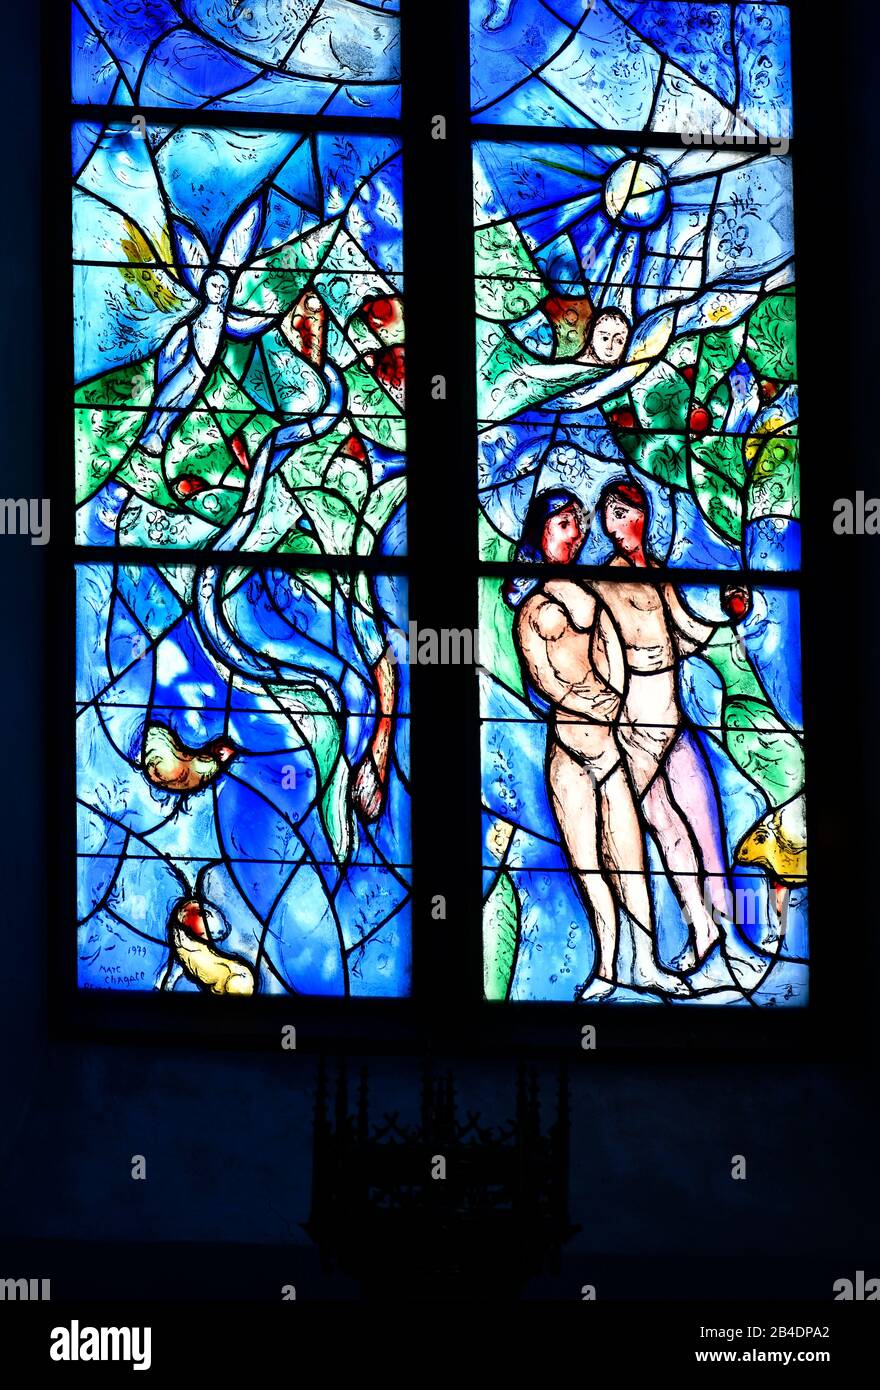 Fenêtre Chagall avec motif de la tentation d'Adam et Eve dans le paradis, église paroissiale Sankt Stephan, Mayence, Rheinland-Pfalz, Allemagne Banque D'Images